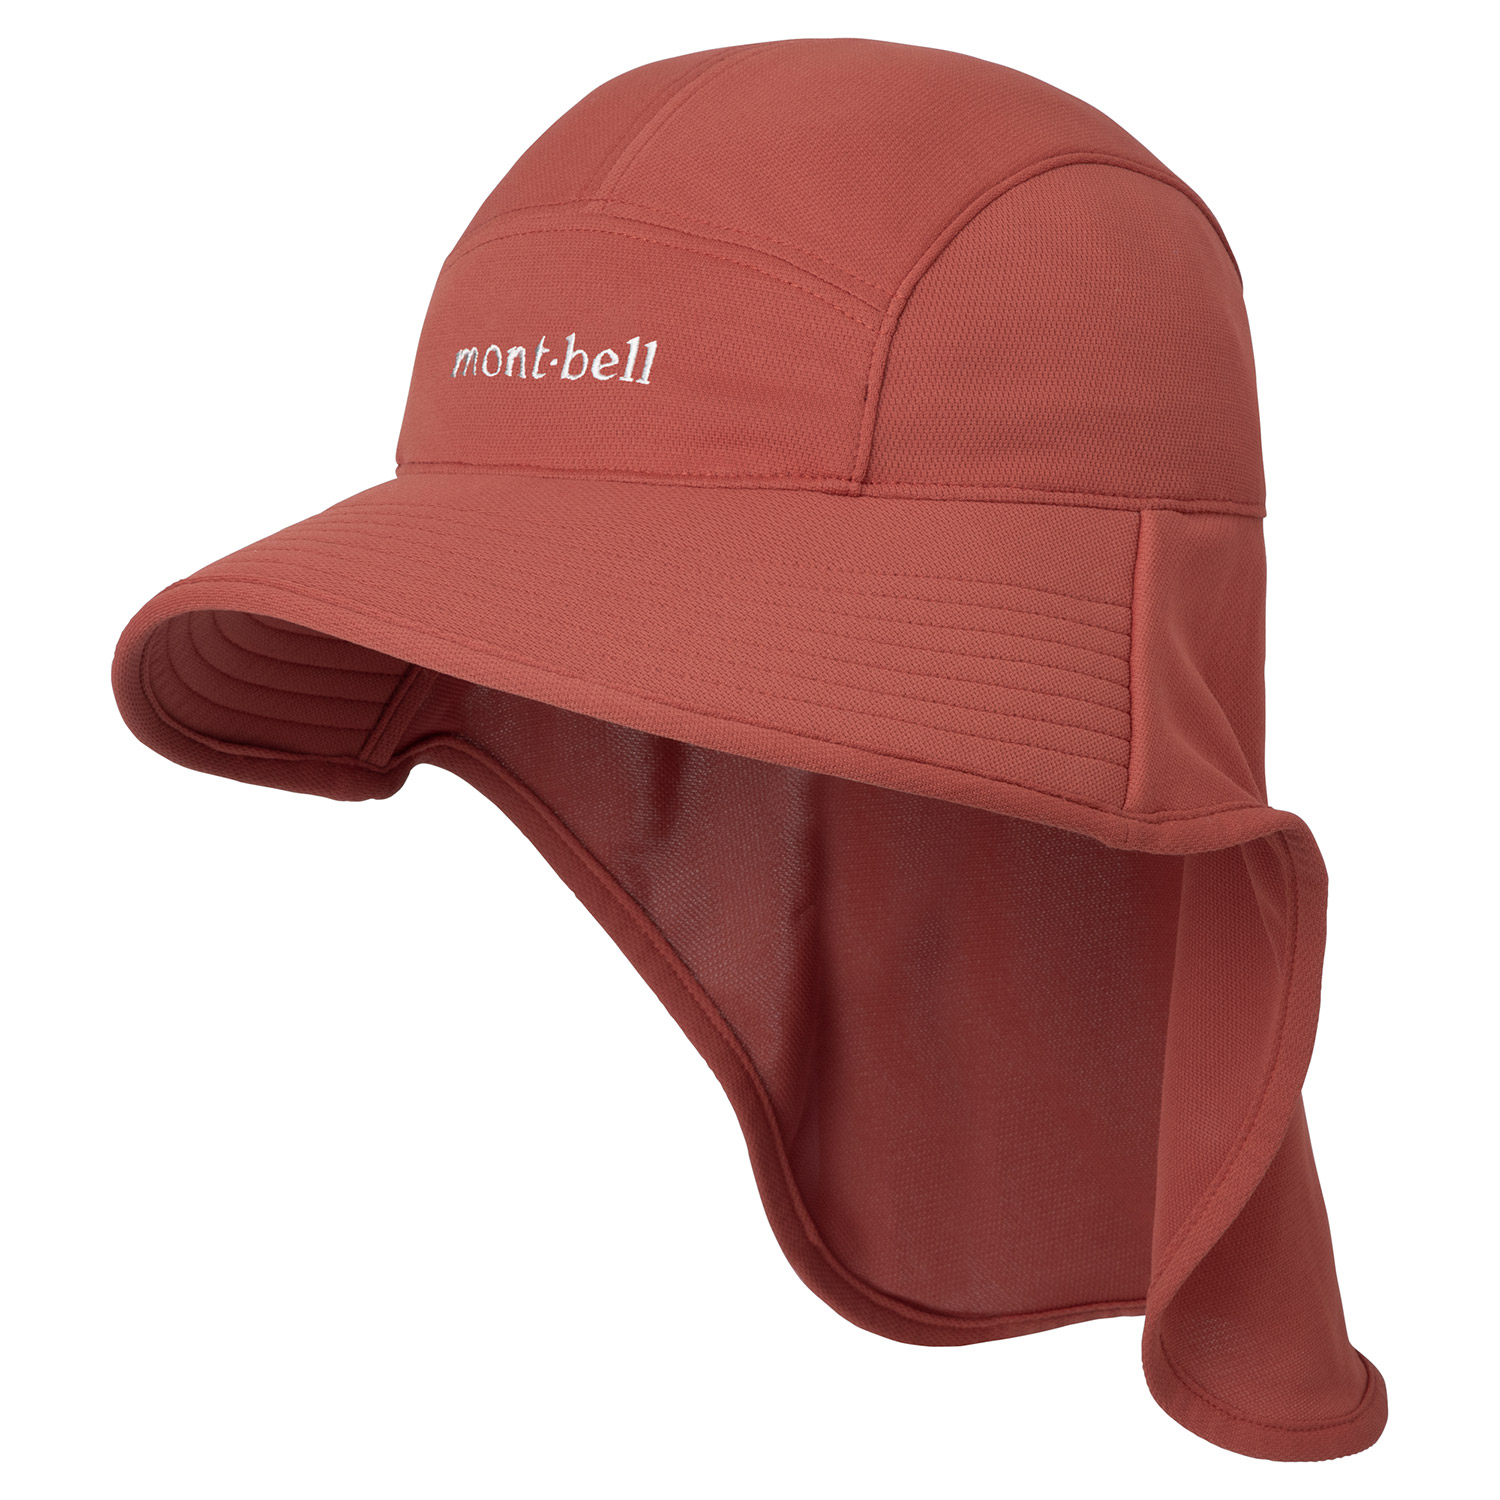 Wickron UV-TECT Shade Hat